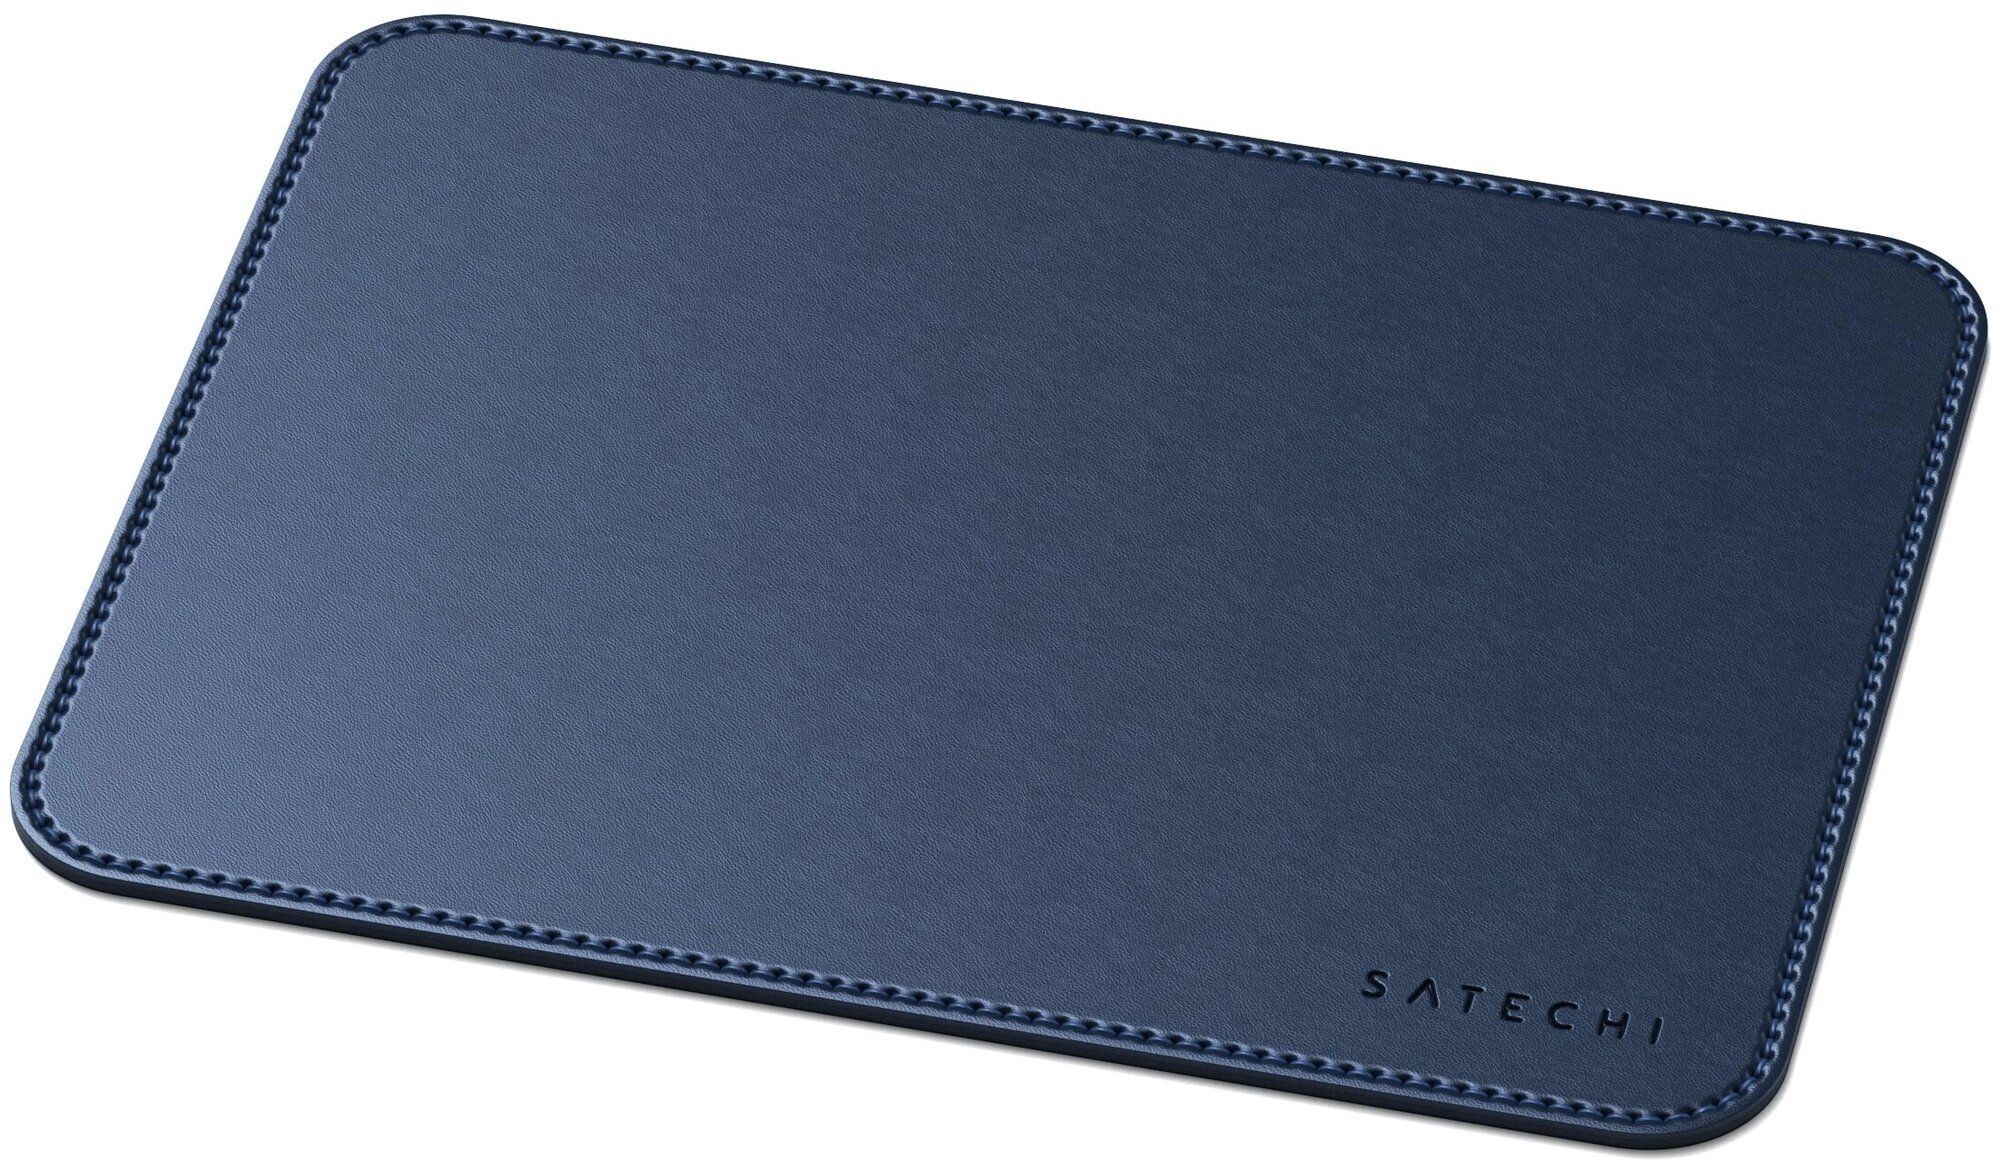 Коврик Satechi Eco Leather Mouse Pad Размер 25 x 19 см. синий. коврик satechi aluminum mouse pad